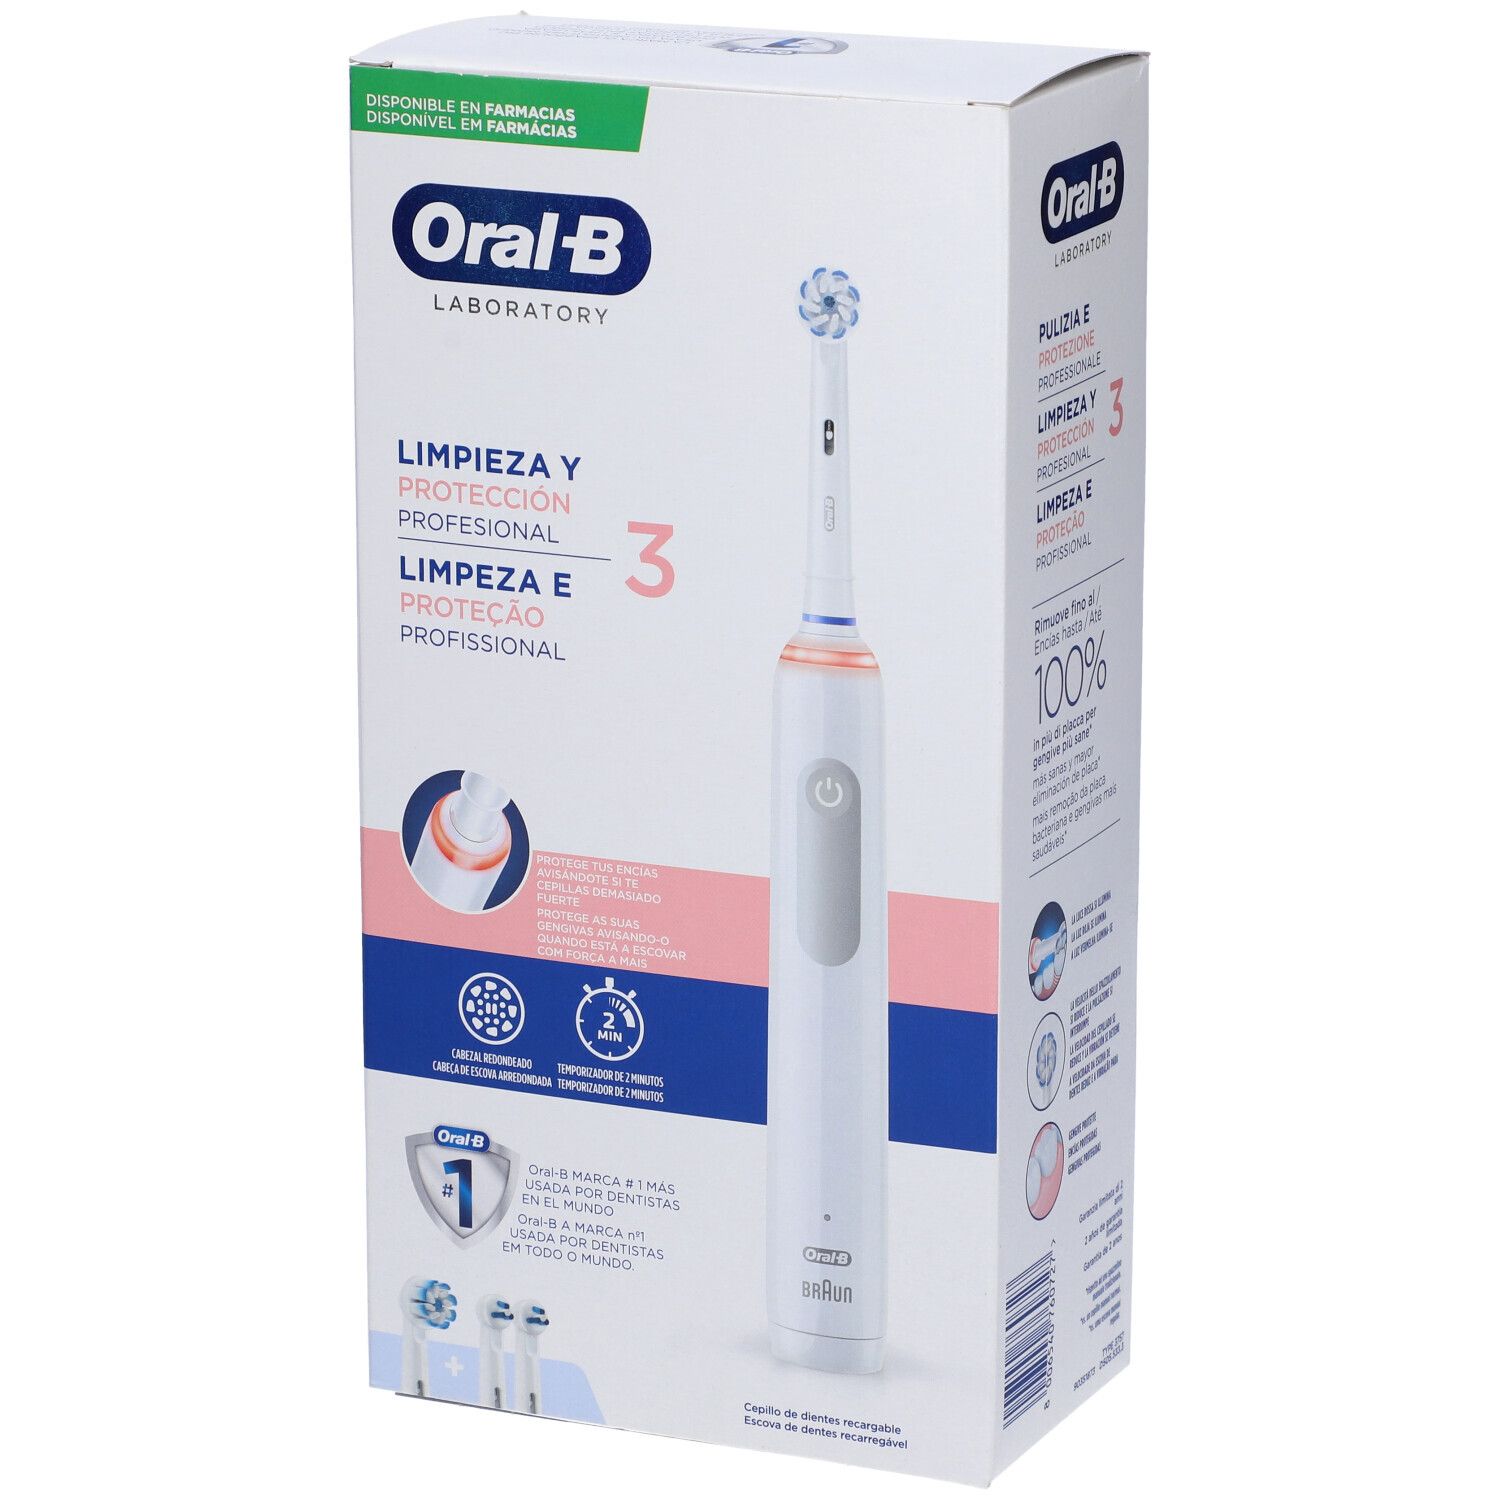 Oral-b Pro 3 Laboratory Spazzolino Elettrico + 2 Refill